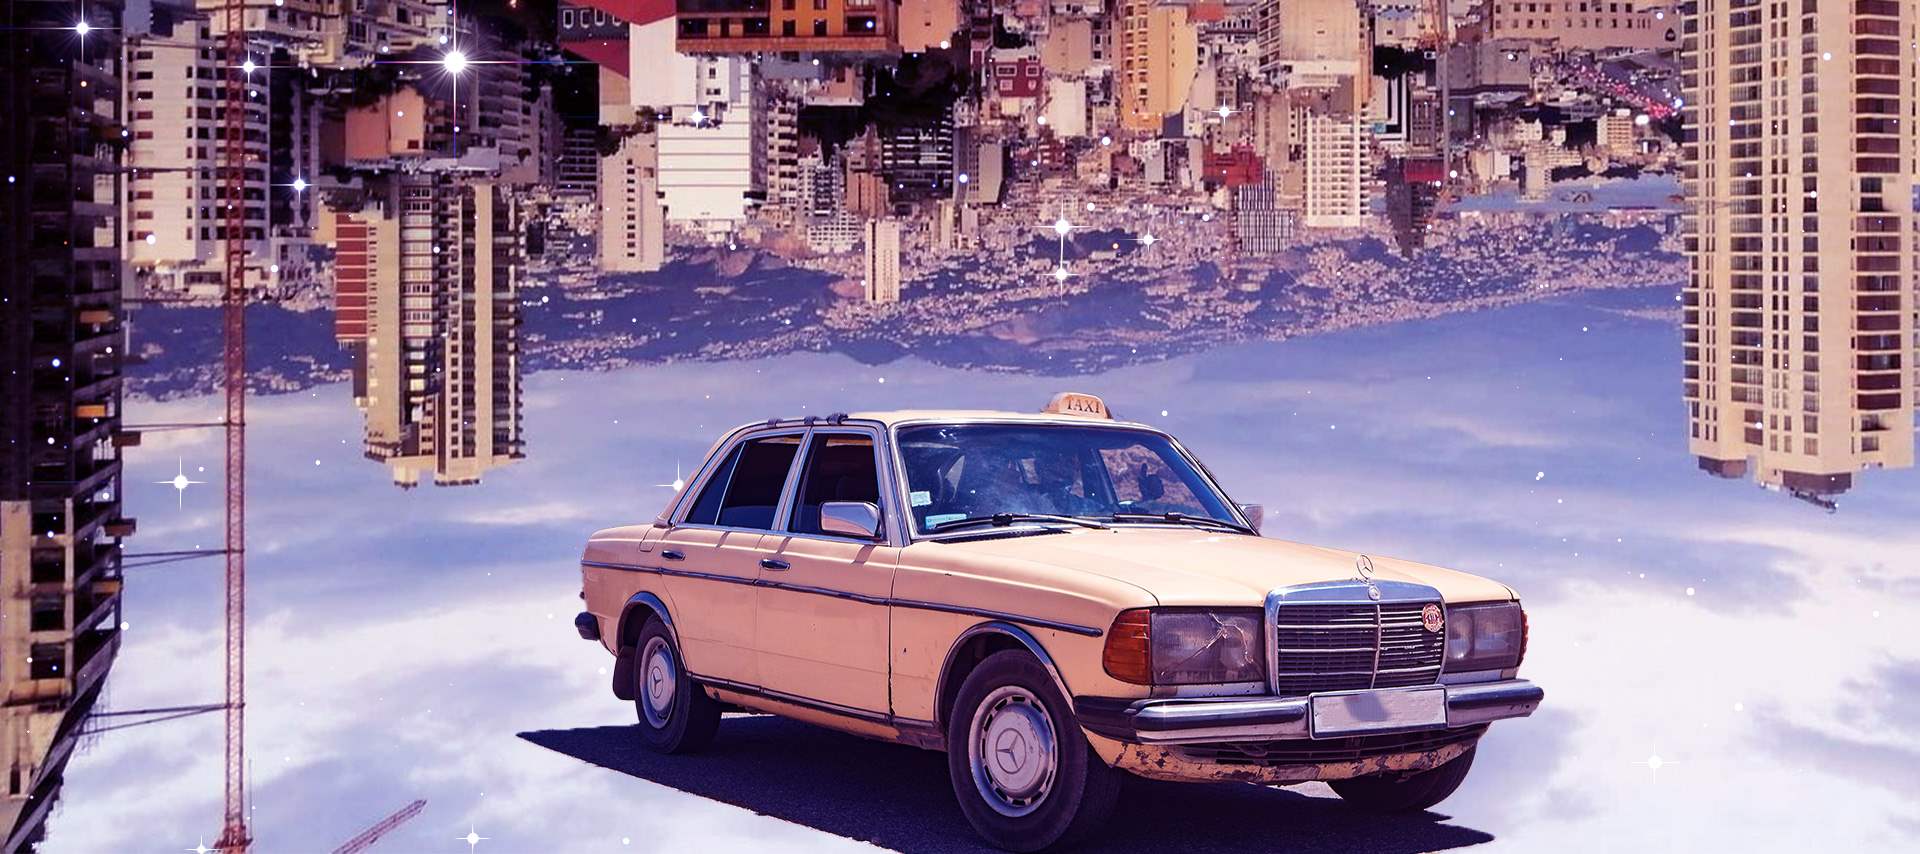 
نظام النقل في لبنان: أوجه انعدام المساواة في التنقل